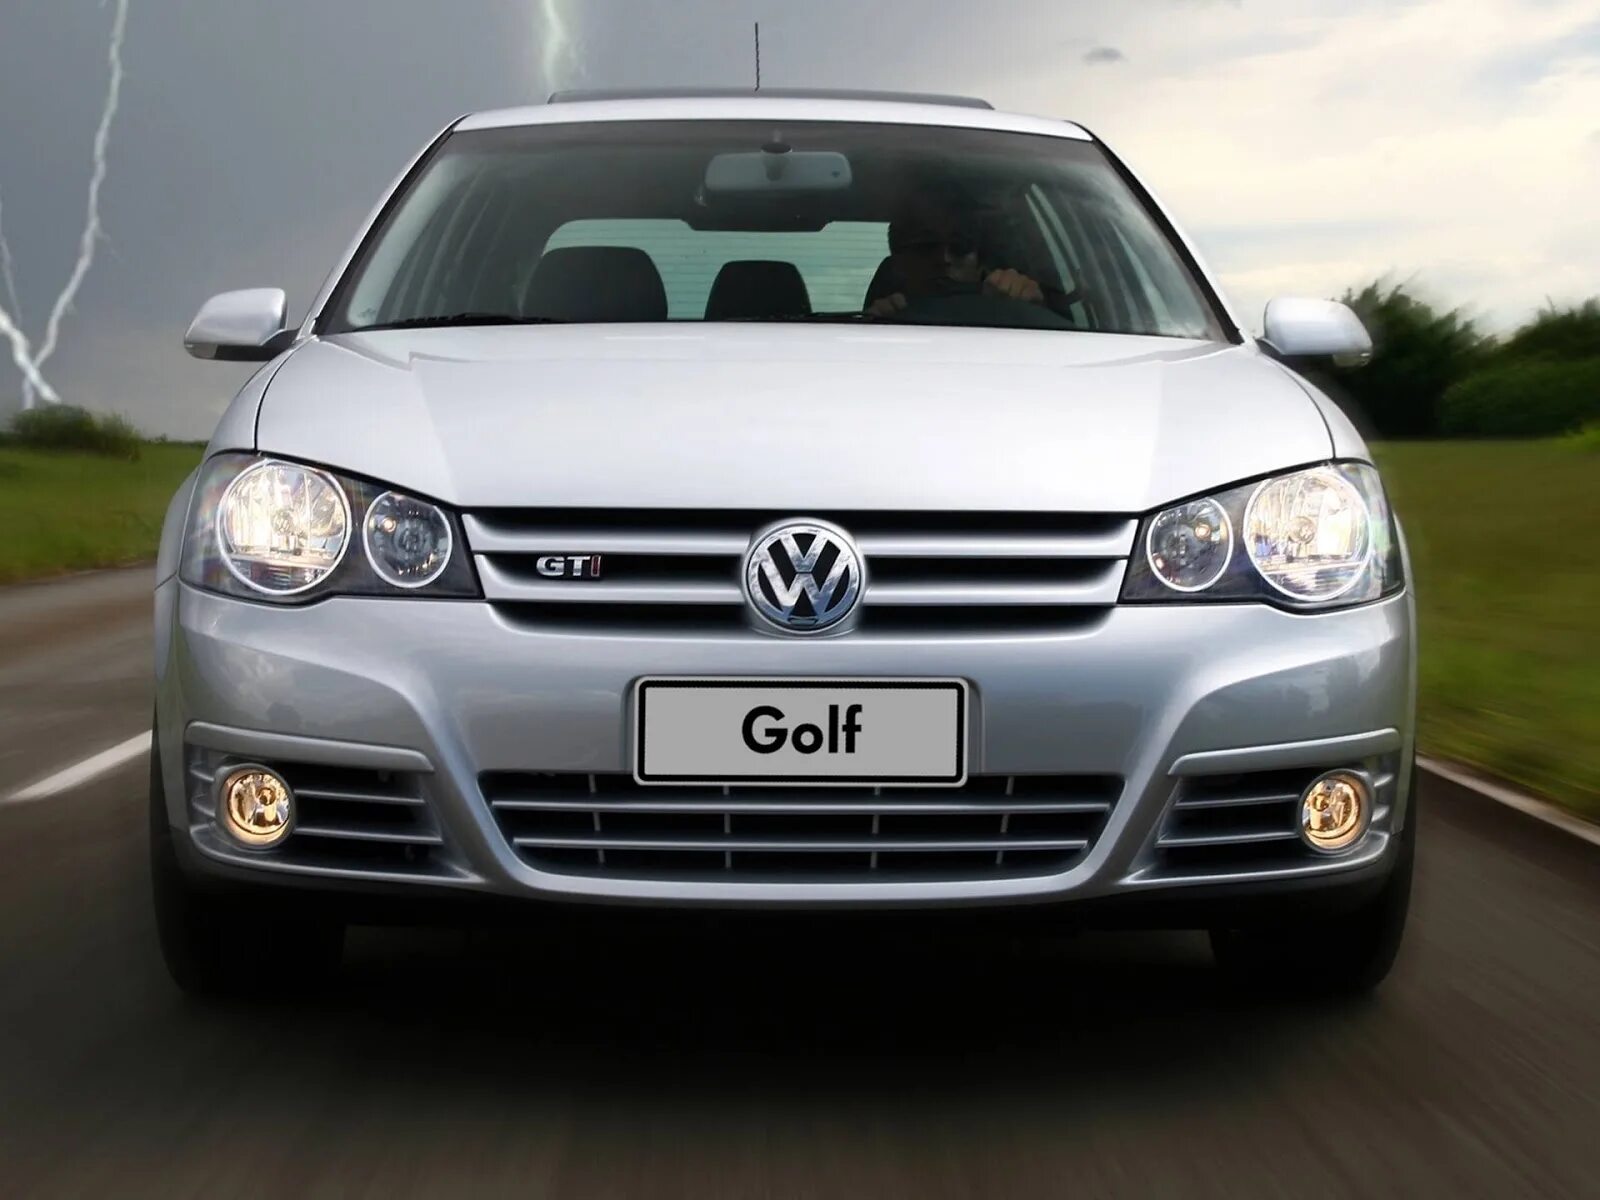 Купить фольксваген 2008г. Volkswagen Golf GTI 2008. Фольксваген гольф GTI 2008. Фольксваген 1.8 турбо 2020. Пассат Фольксваген 2008 турбо спорт.